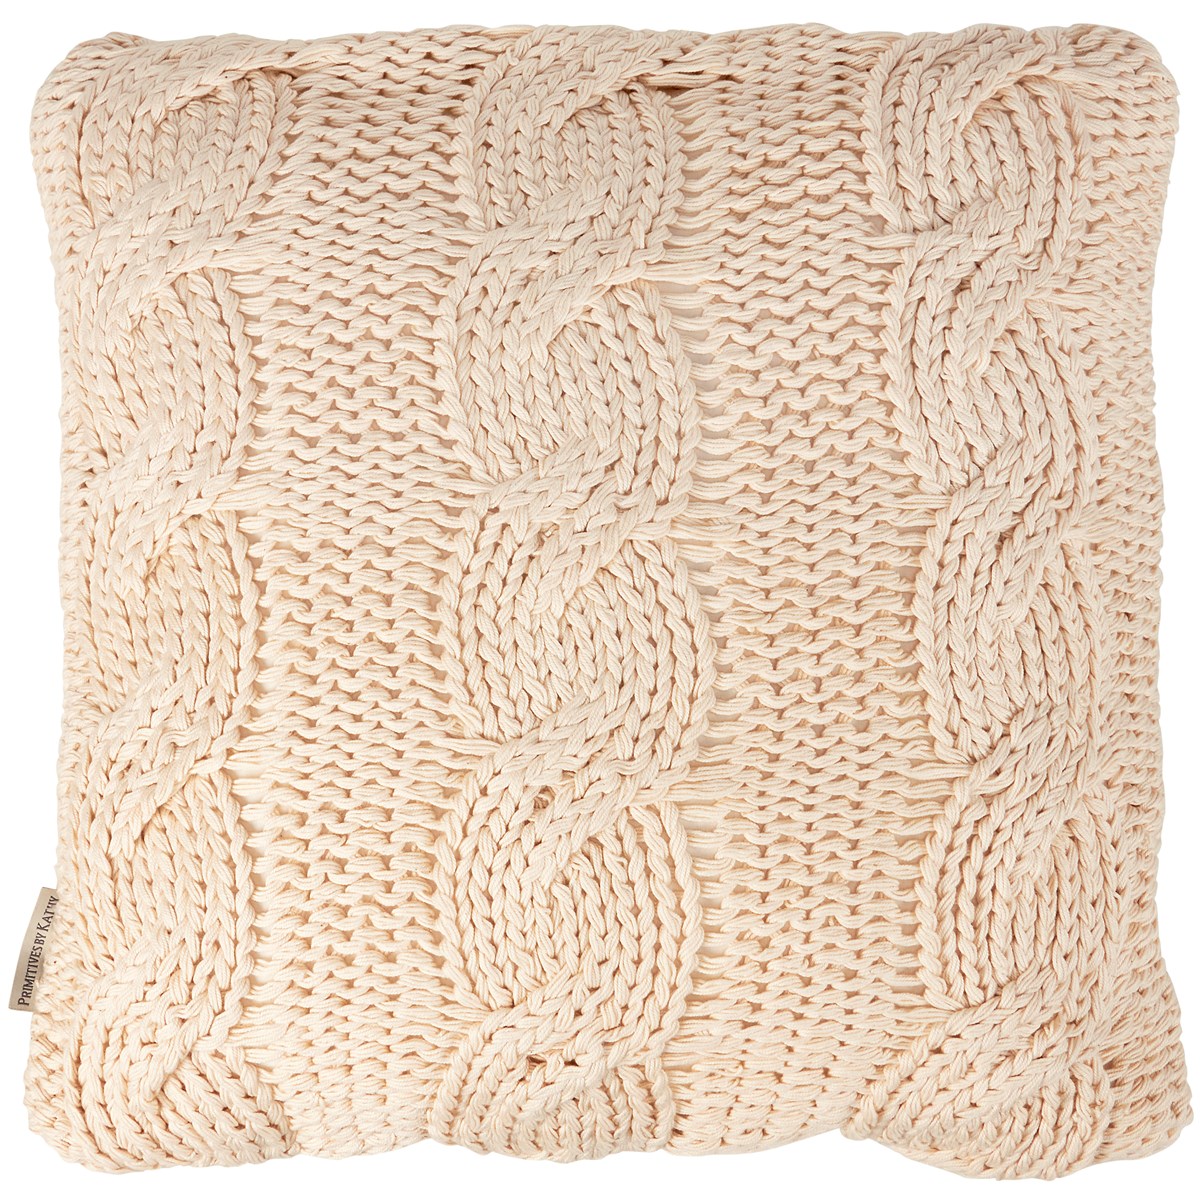 Fisherman's Knit Pillow - Cotton, Zipper